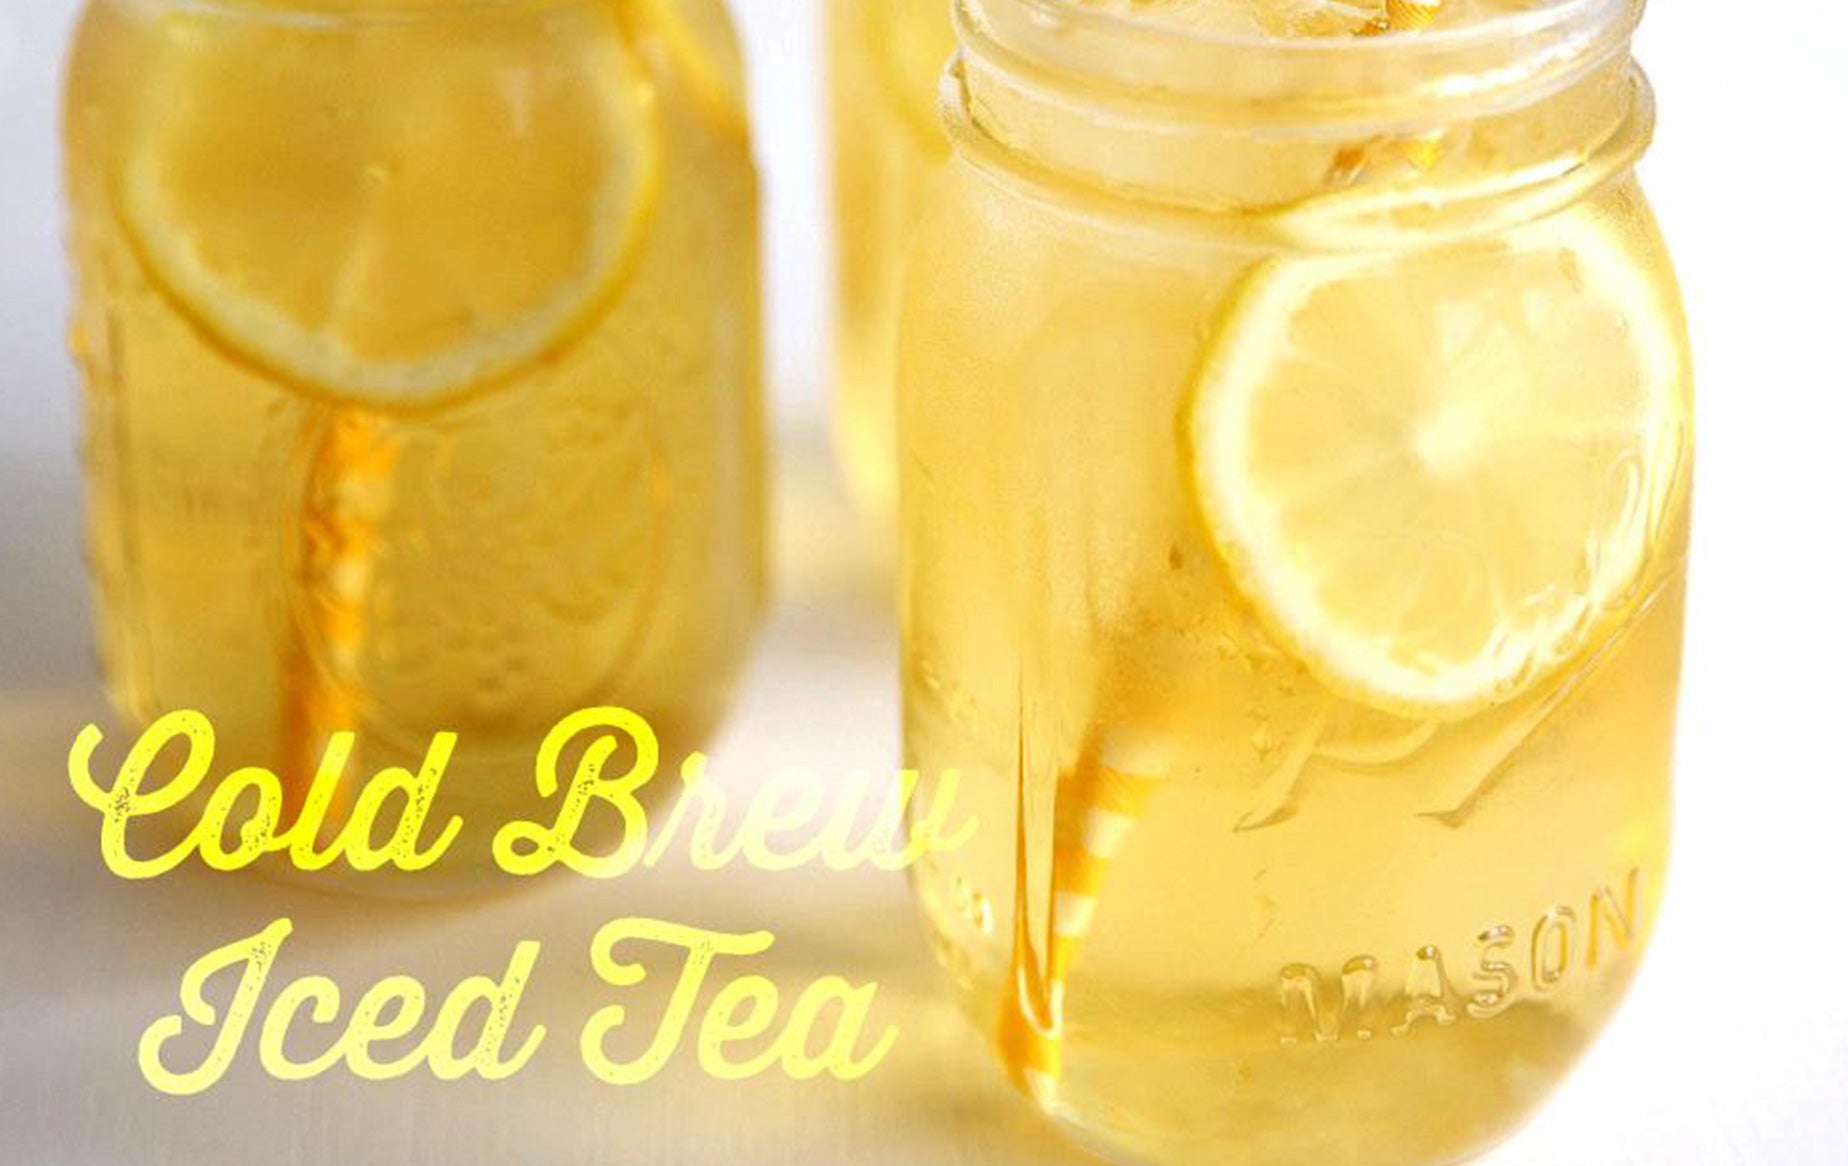 Receta: Cold brew Iced Tea